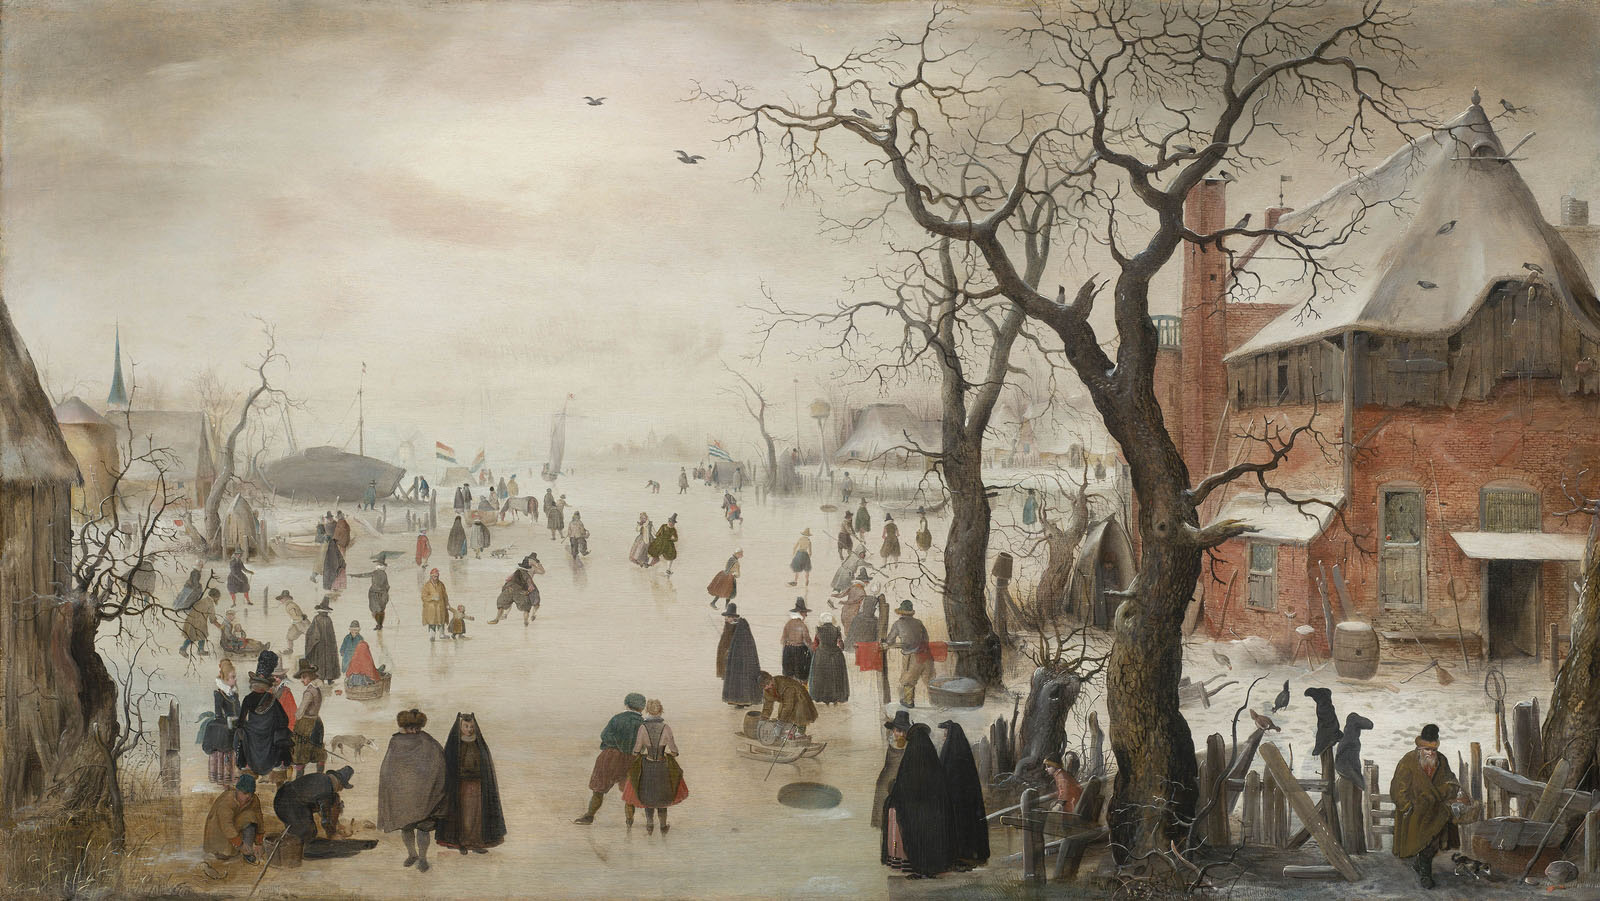 Хендрик ван Аверкамп. "Зимний пейзаж около деревни". 1610-1615. Музей изобразительных искусств, Бостон.